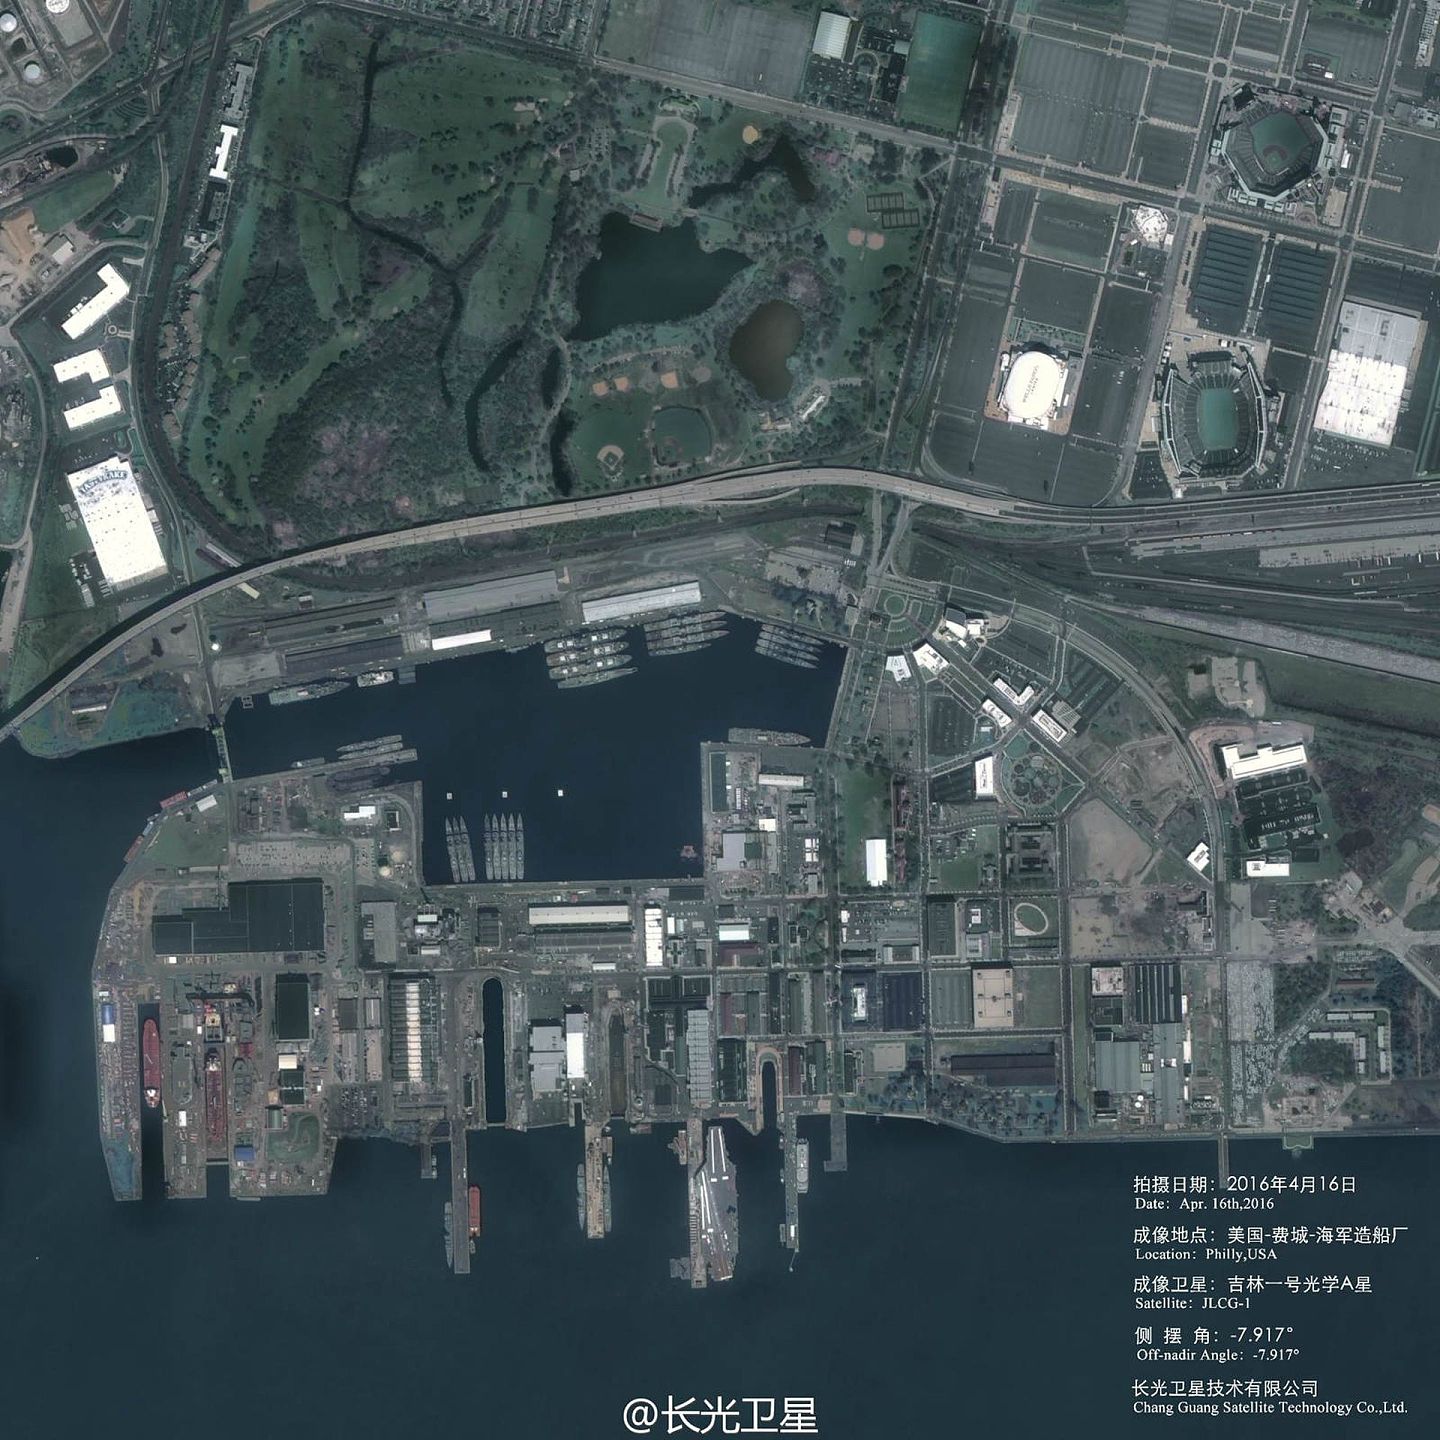 2016年5月，中国长光卫星公司官方微博发布了由吉林一号卫星拍摄的美国费城海军造船厂的高清卫星照片。 图为美国费城海军造船厂全景。 （微博@长光卫星）